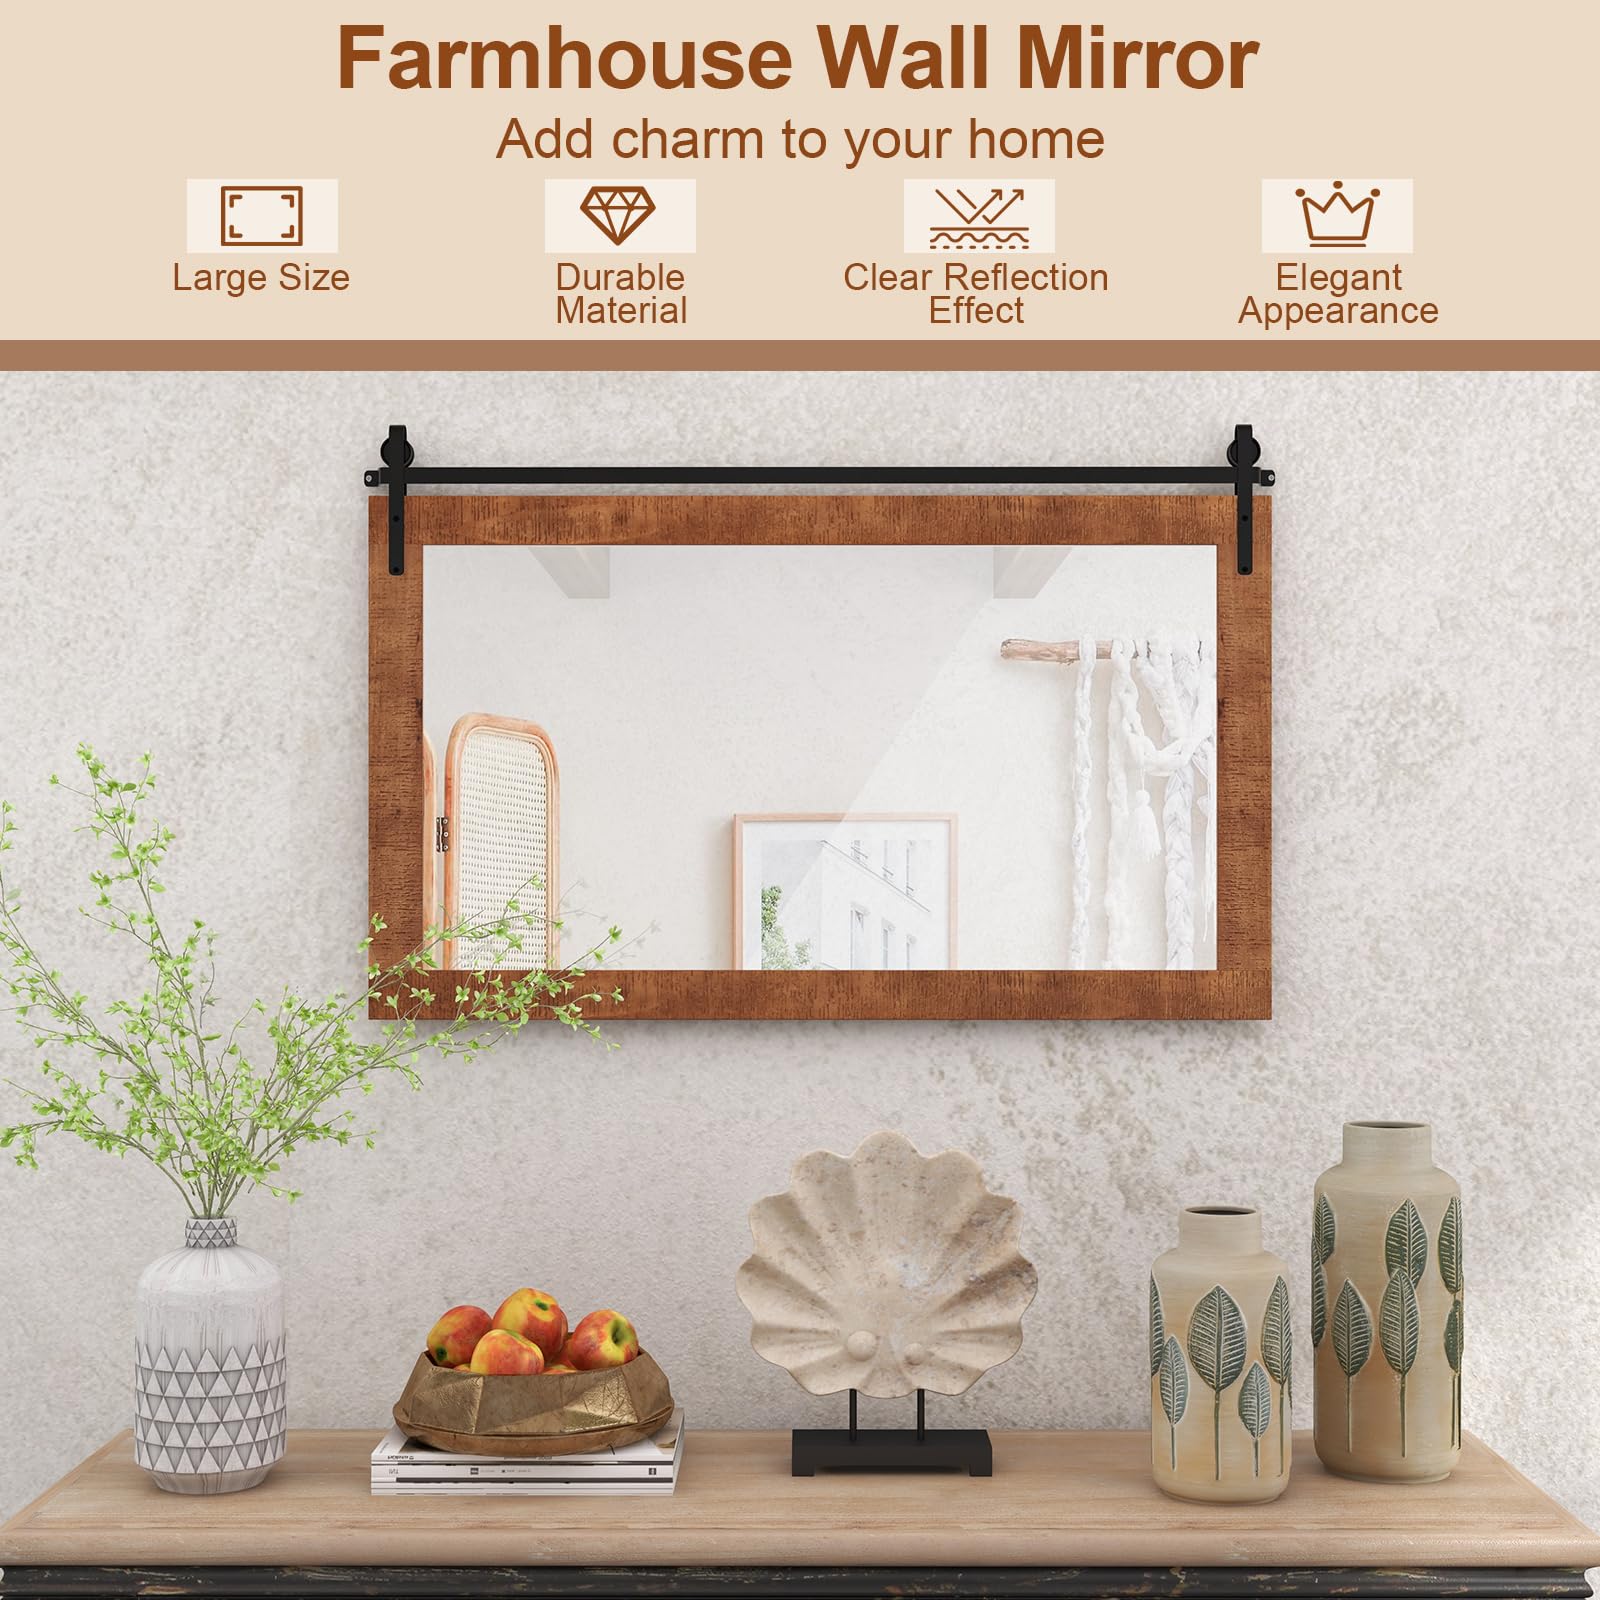 CHARMAID Farmhouse Wall Mirror